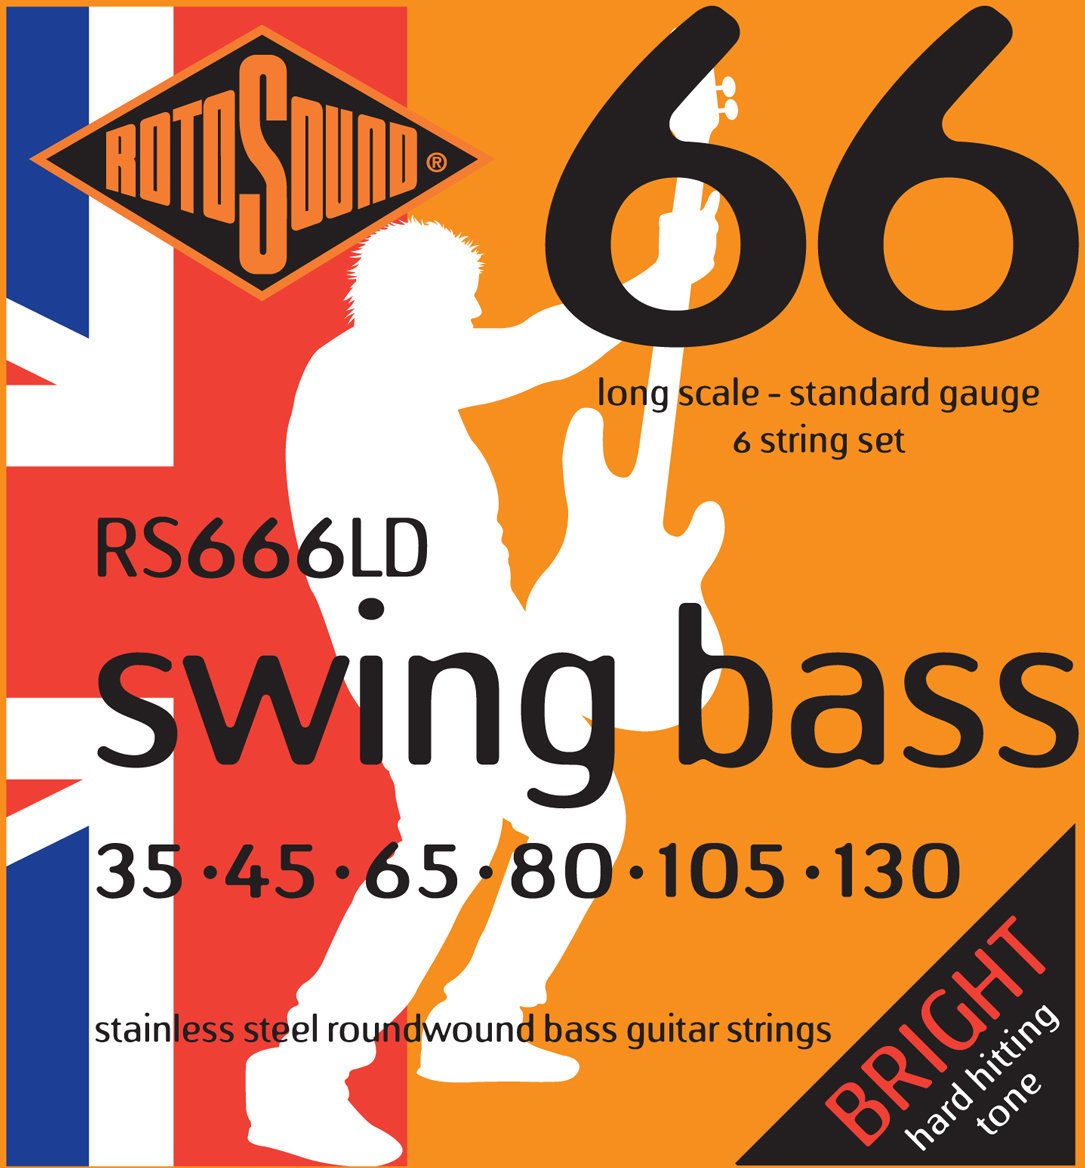 Struny pro 6-strunnou baskytaru Rotosound RS 666 LD